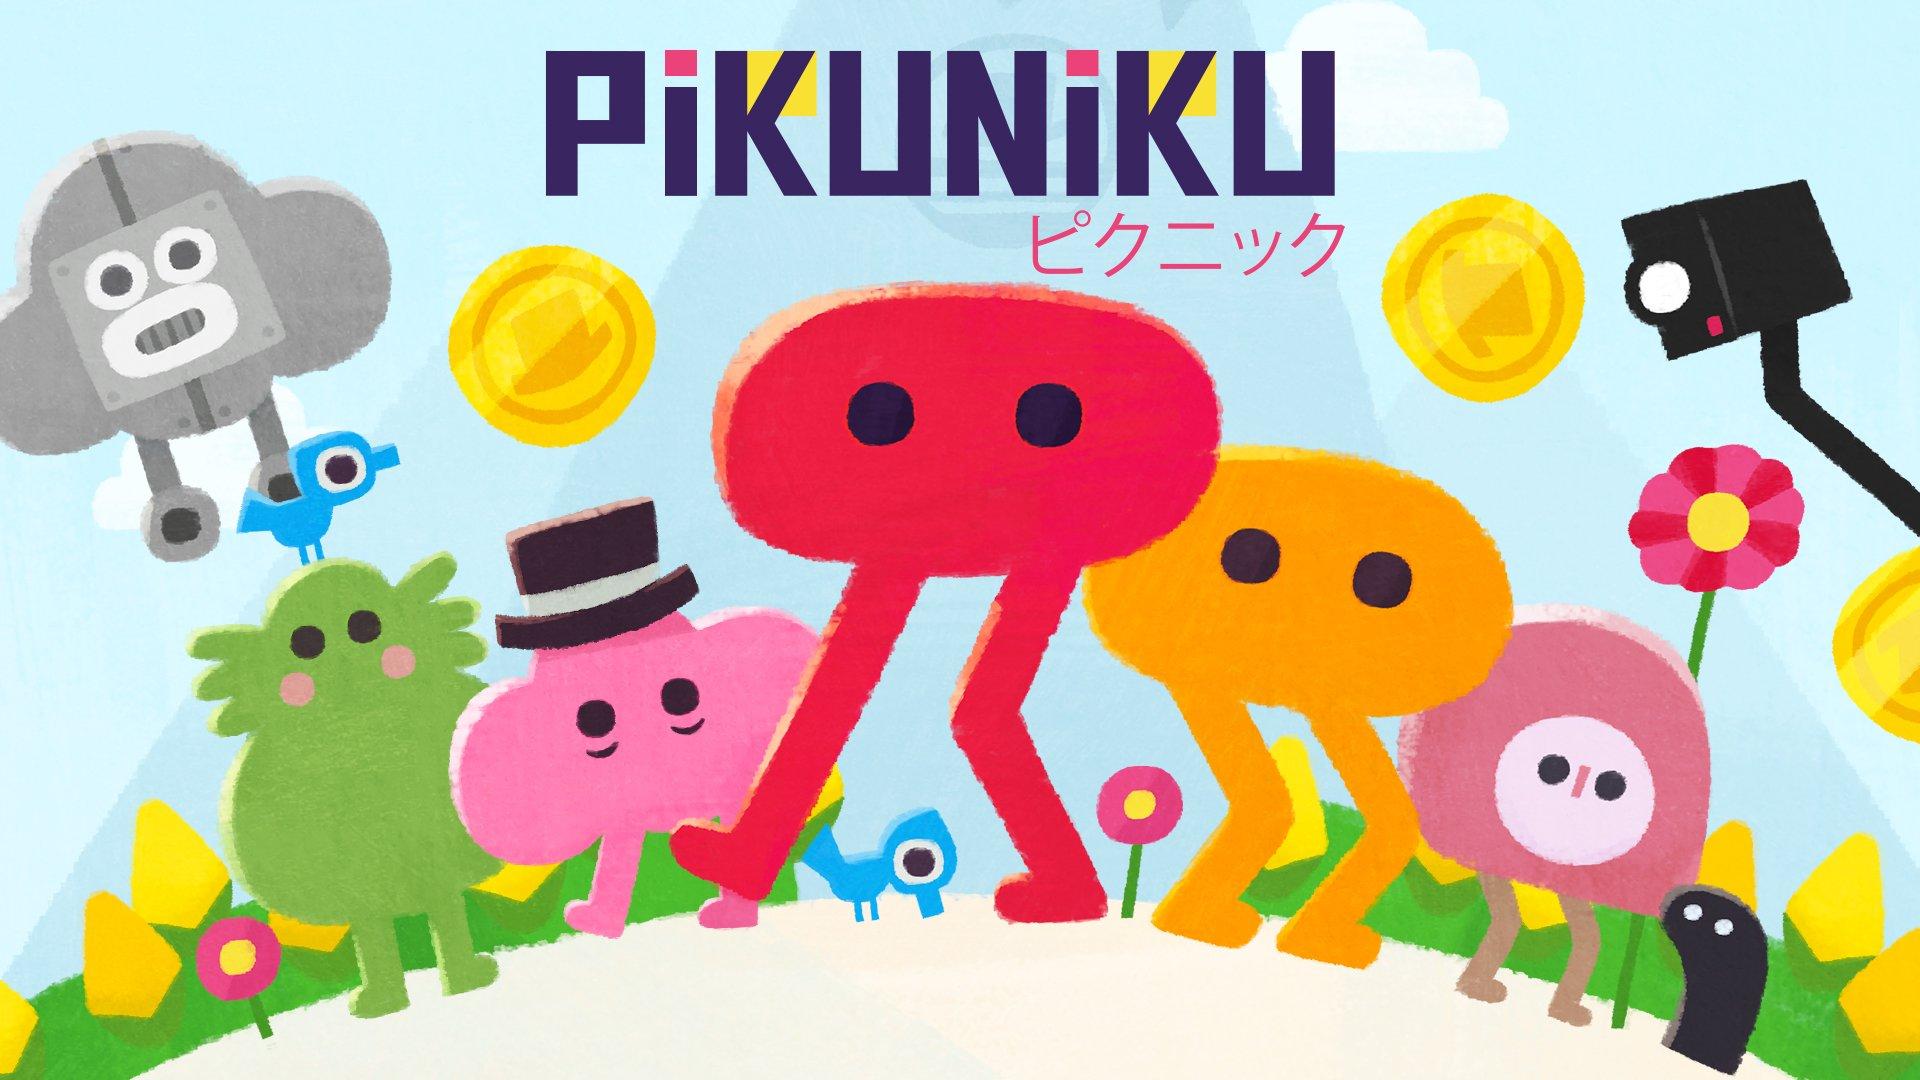 Pikuniku download free